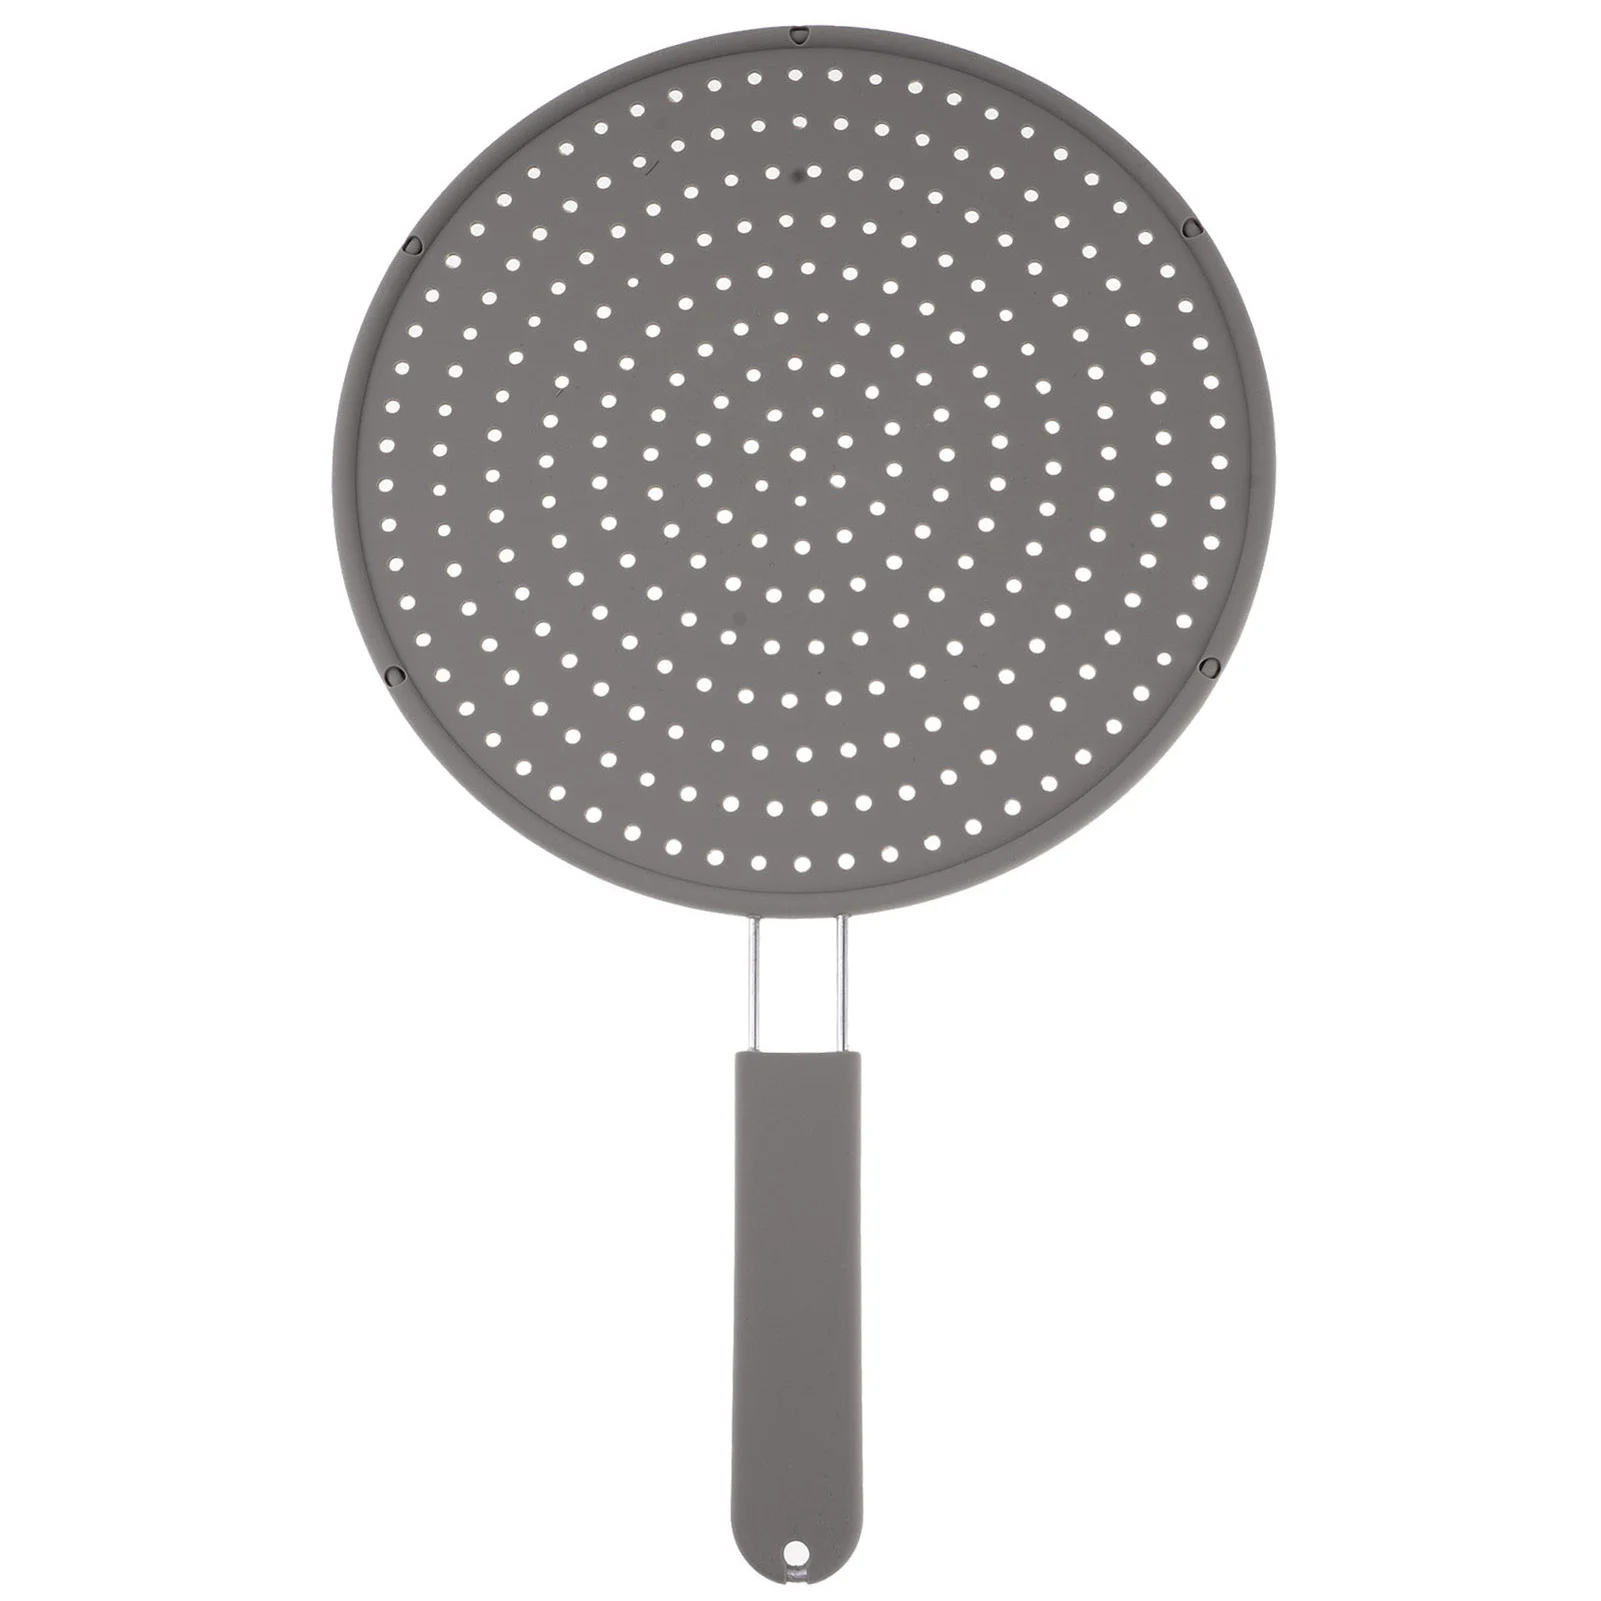 

Кухонный масляный фильтр для крышки с зеркальной крышкой, экран для защиты от брызг, кухонные инструменты, крышка для кастрюли, Круглый филь...